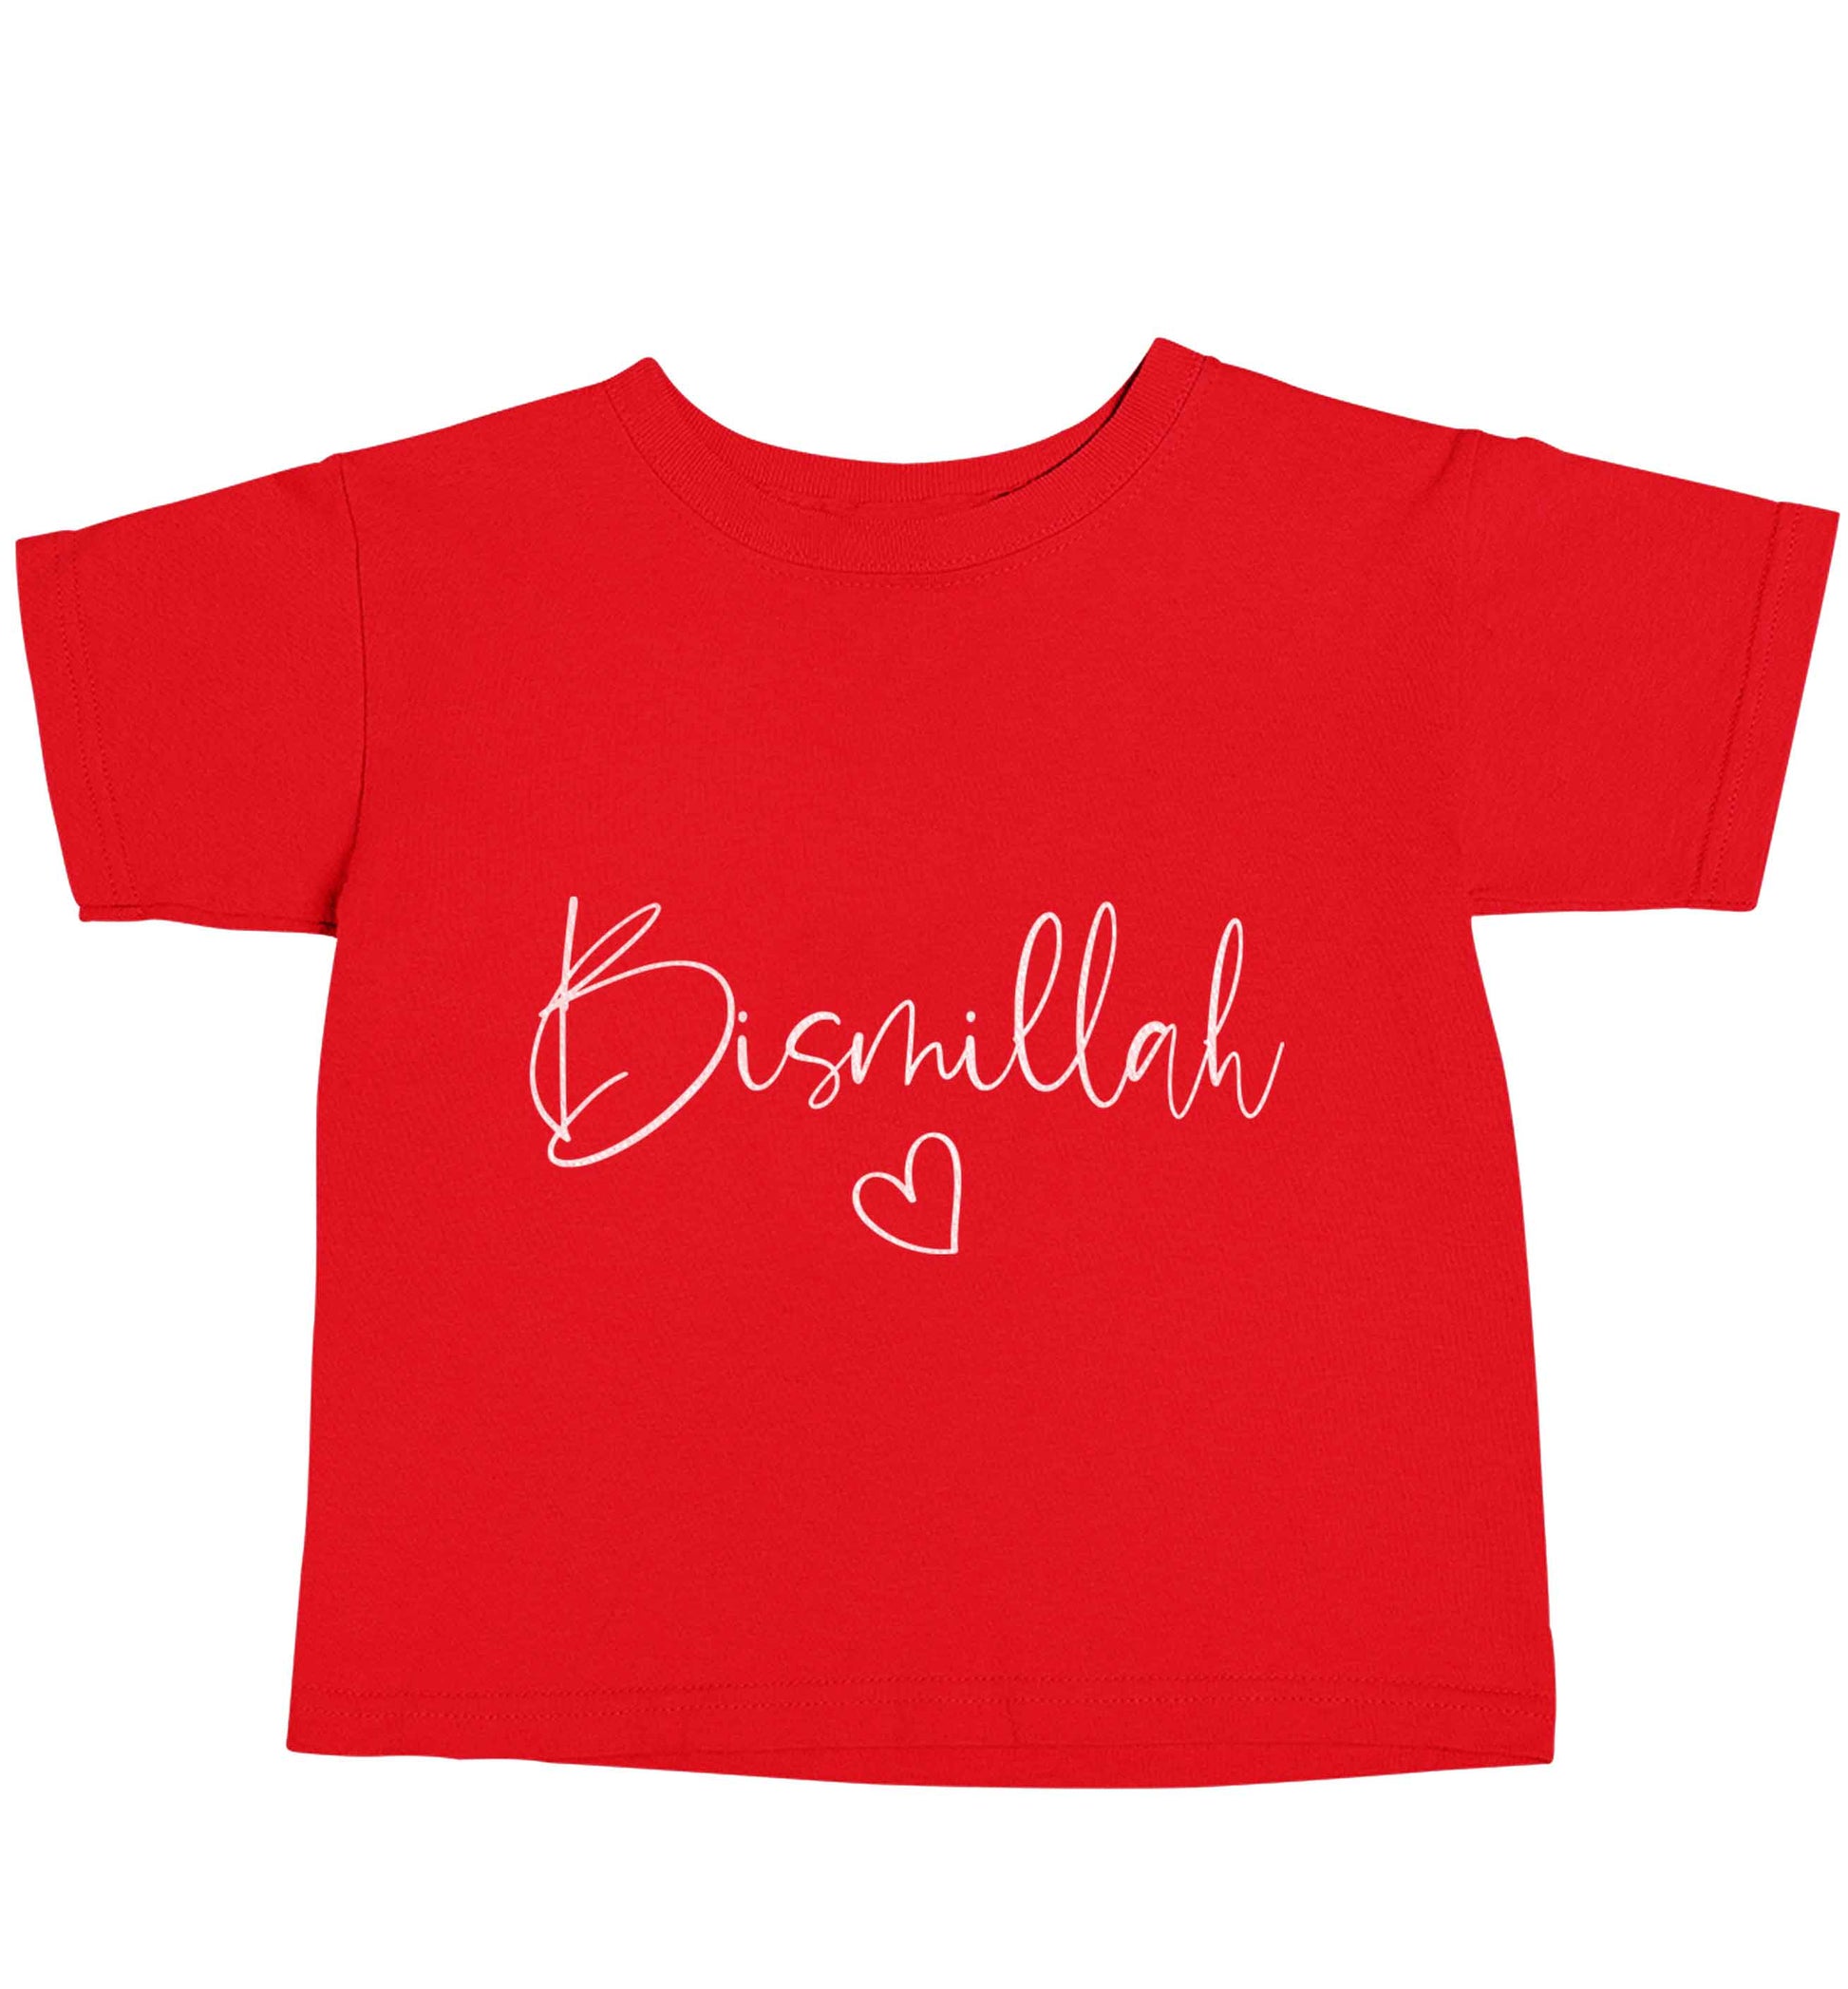 Bismillah red baby toddler Tshirt 2 Years